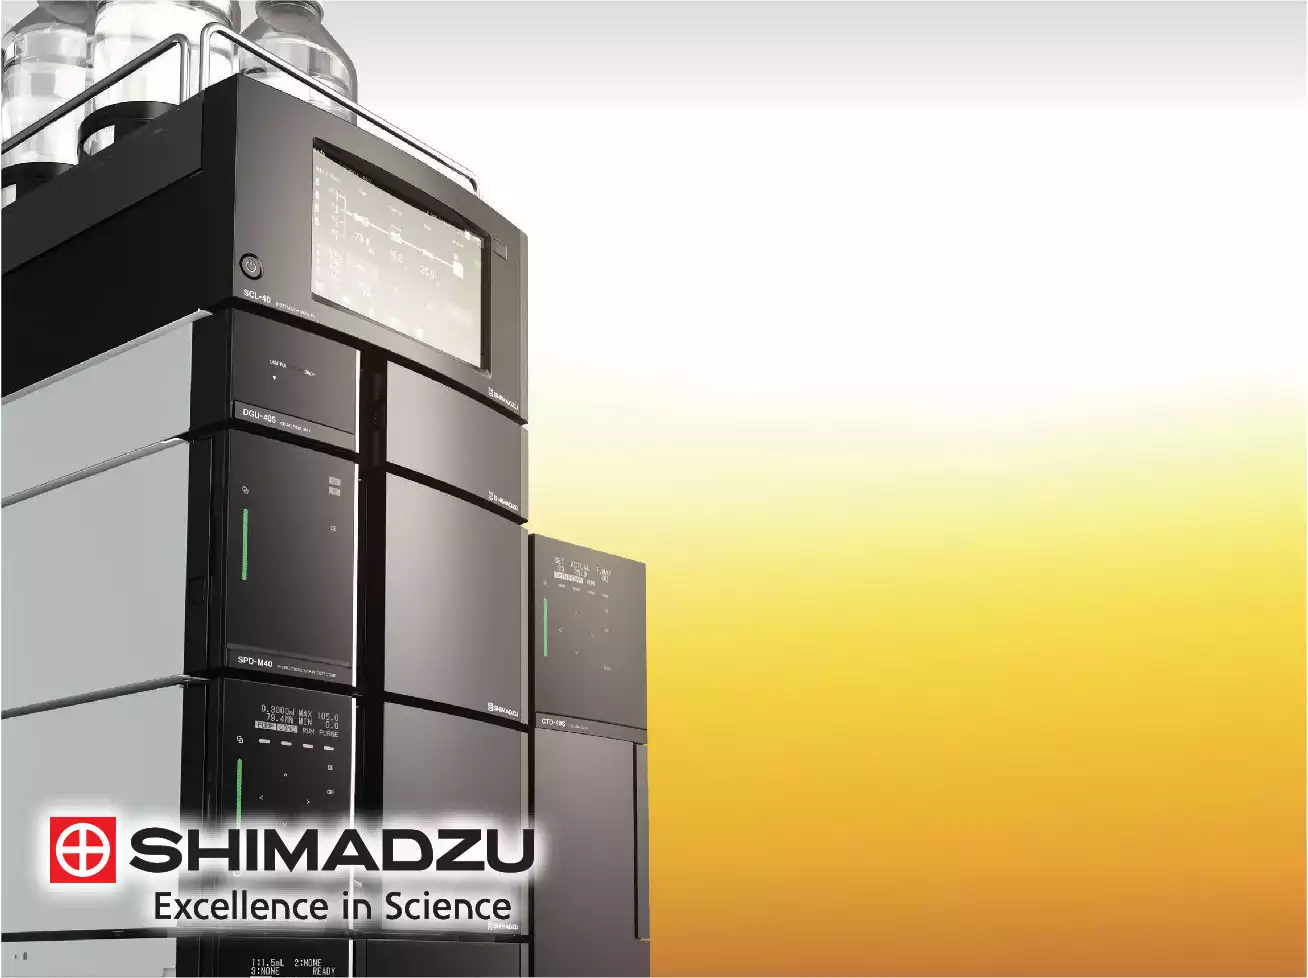 Shimadzu HPLC/UHPLC/SFC Systems